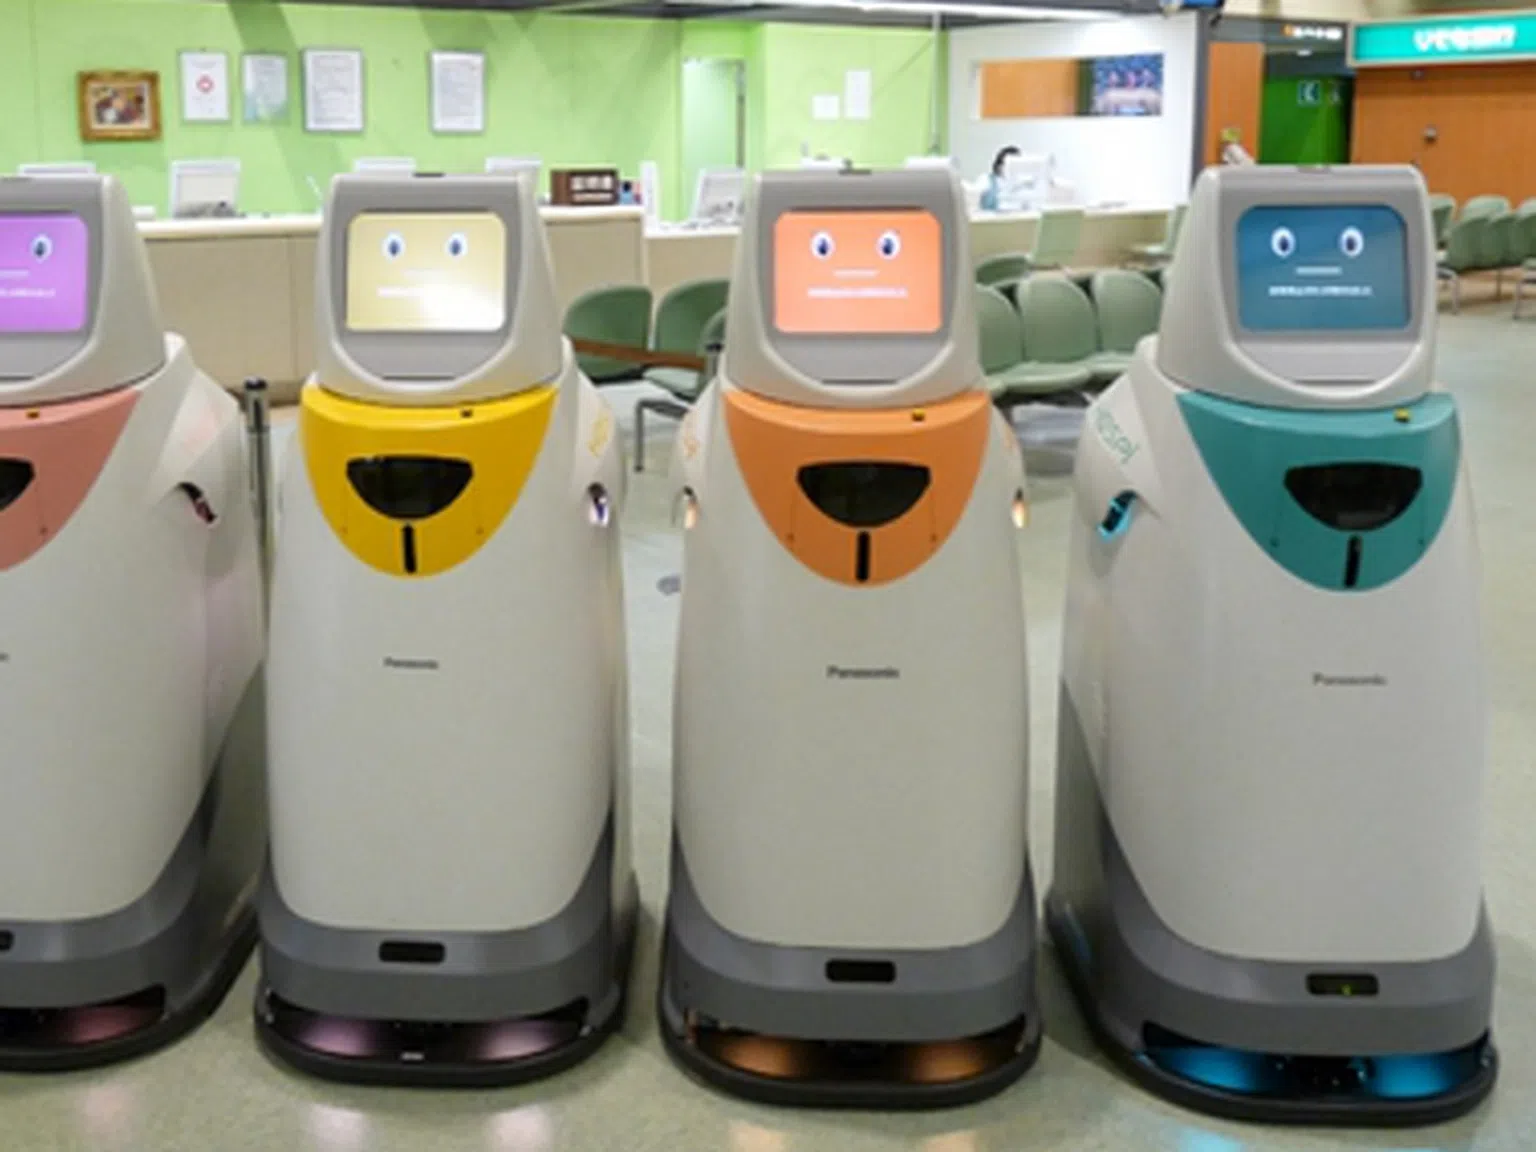 Роботи ще помагат в болниците